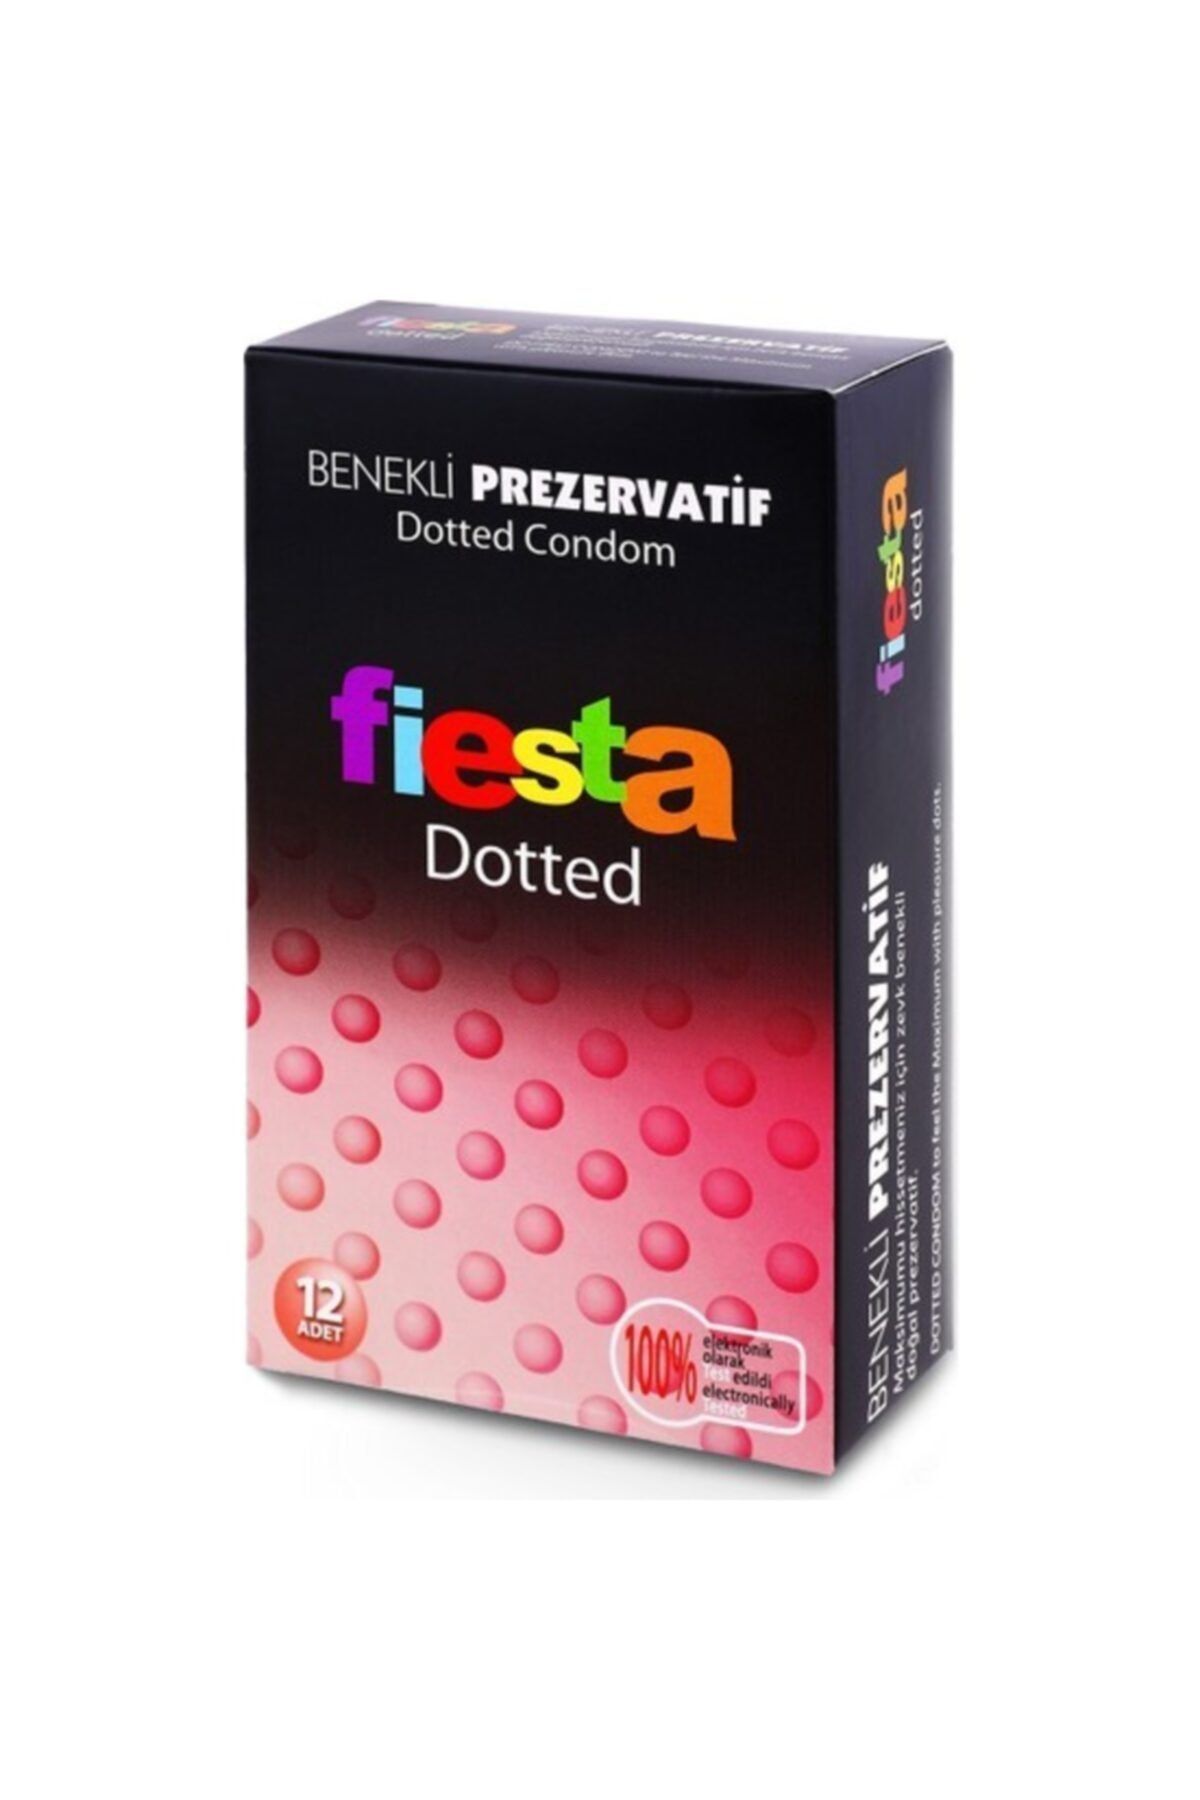 Fiesta Dotted Benekli 12 Li Prezervatif 2 Li C-1589